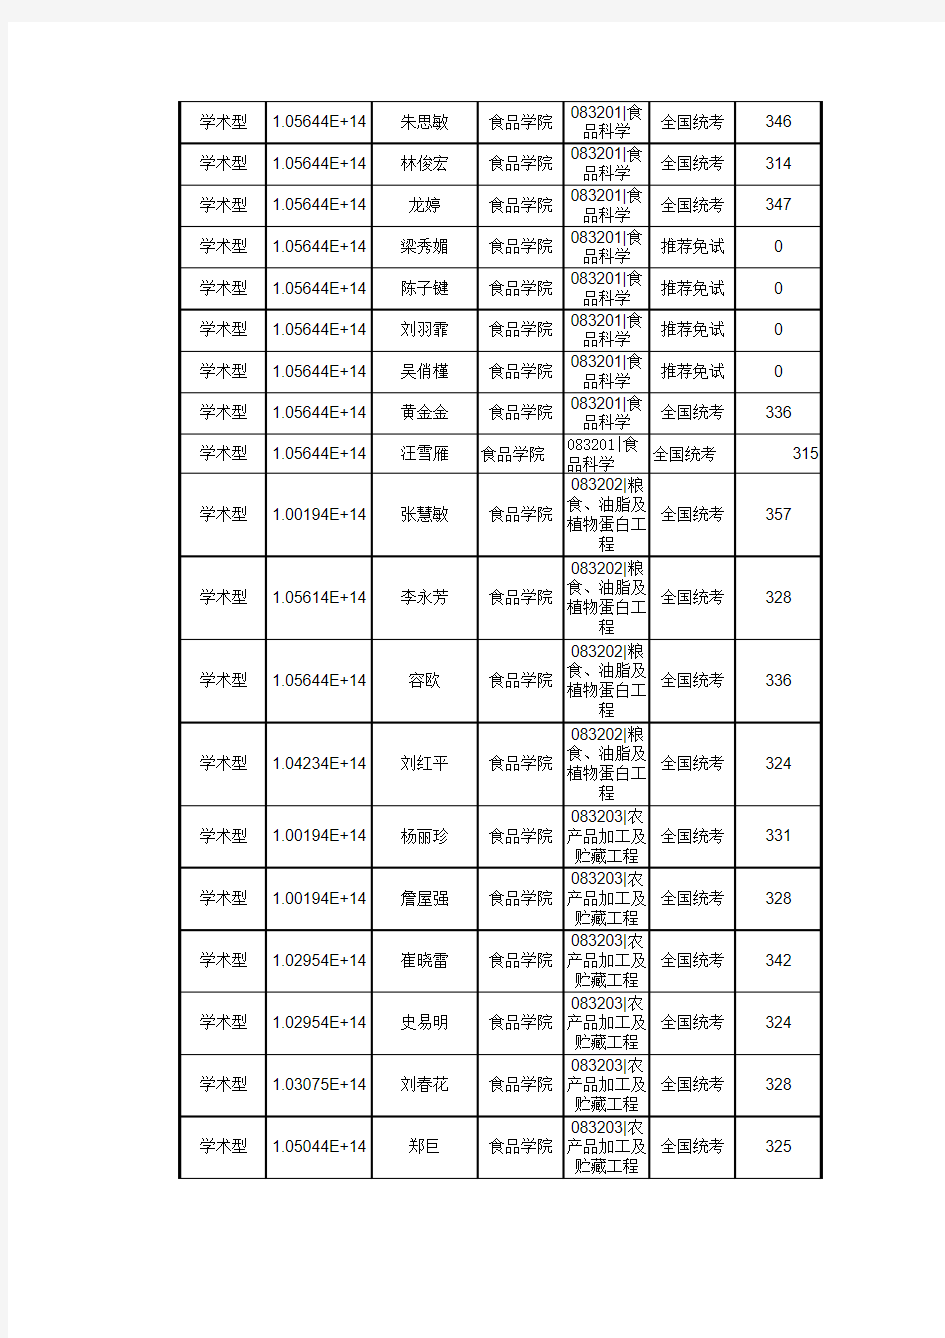 华南农业大学食品学院2014年度统考硕士复试结果公示